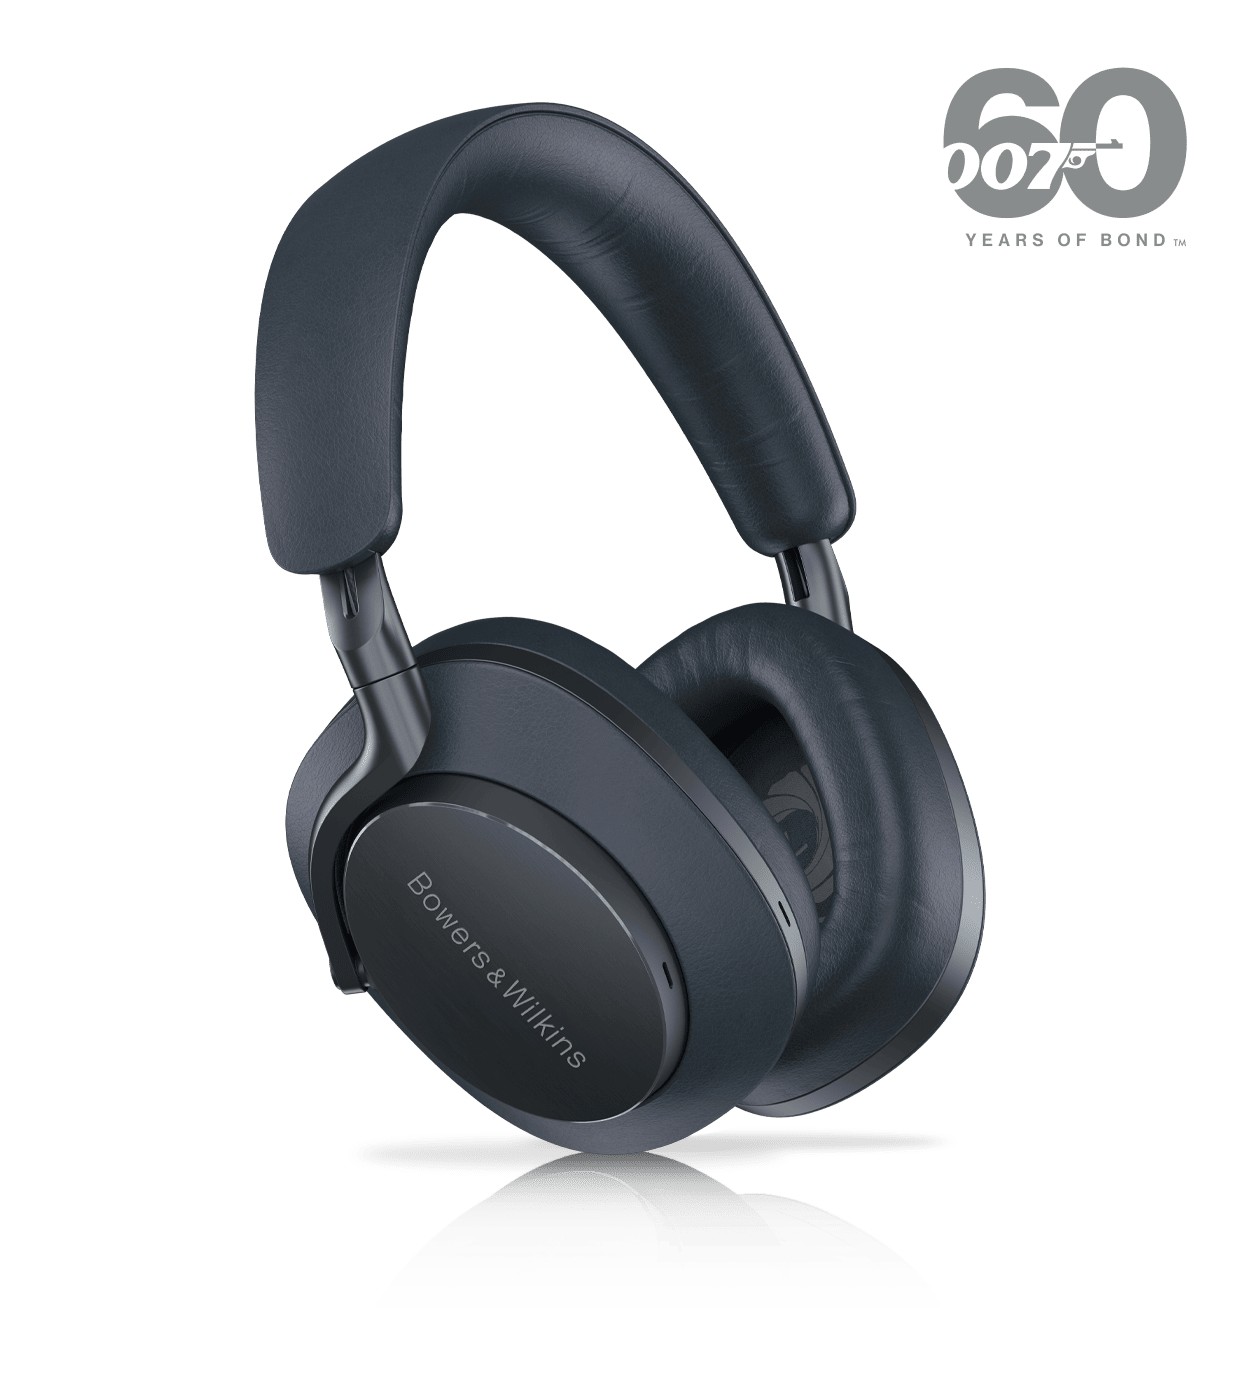 B&W 007 headphones